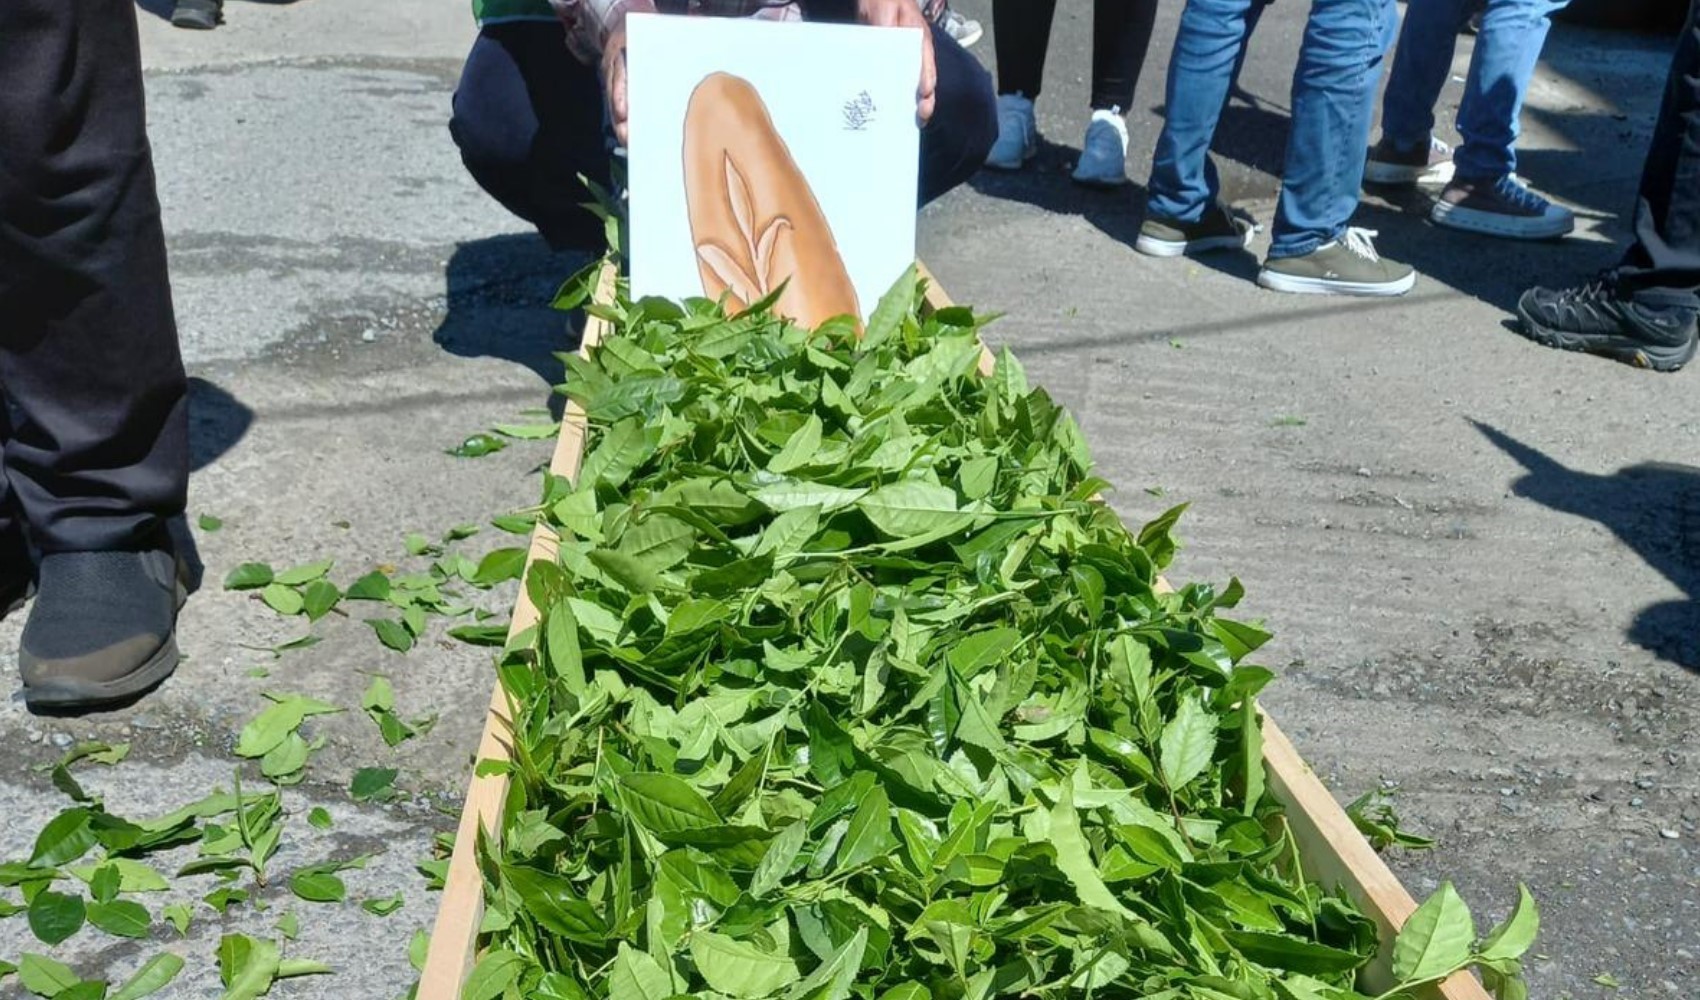 Rize'de çay alım fiyatları tartışılıyor: 'Tabutlu' protesto gerçekleşti